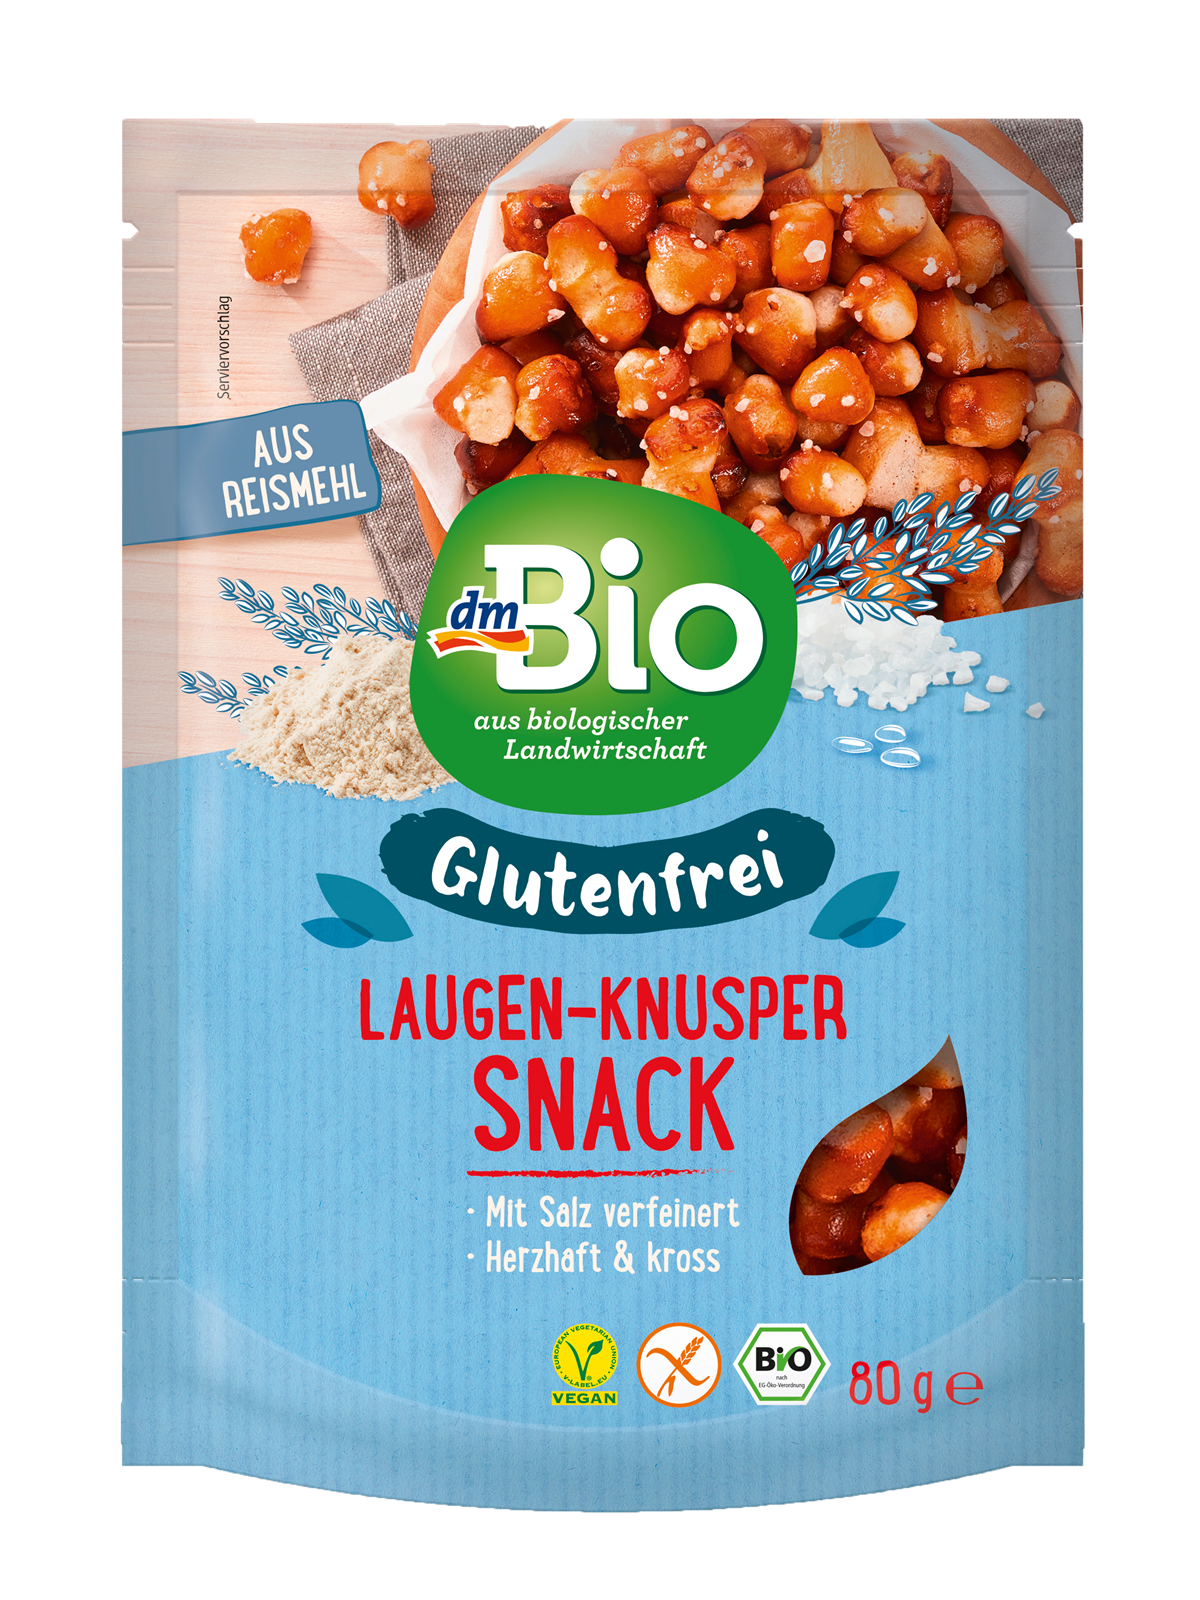 dmBio glutenfreier Laugen-Knusper Snack (80 g): 1,65 €